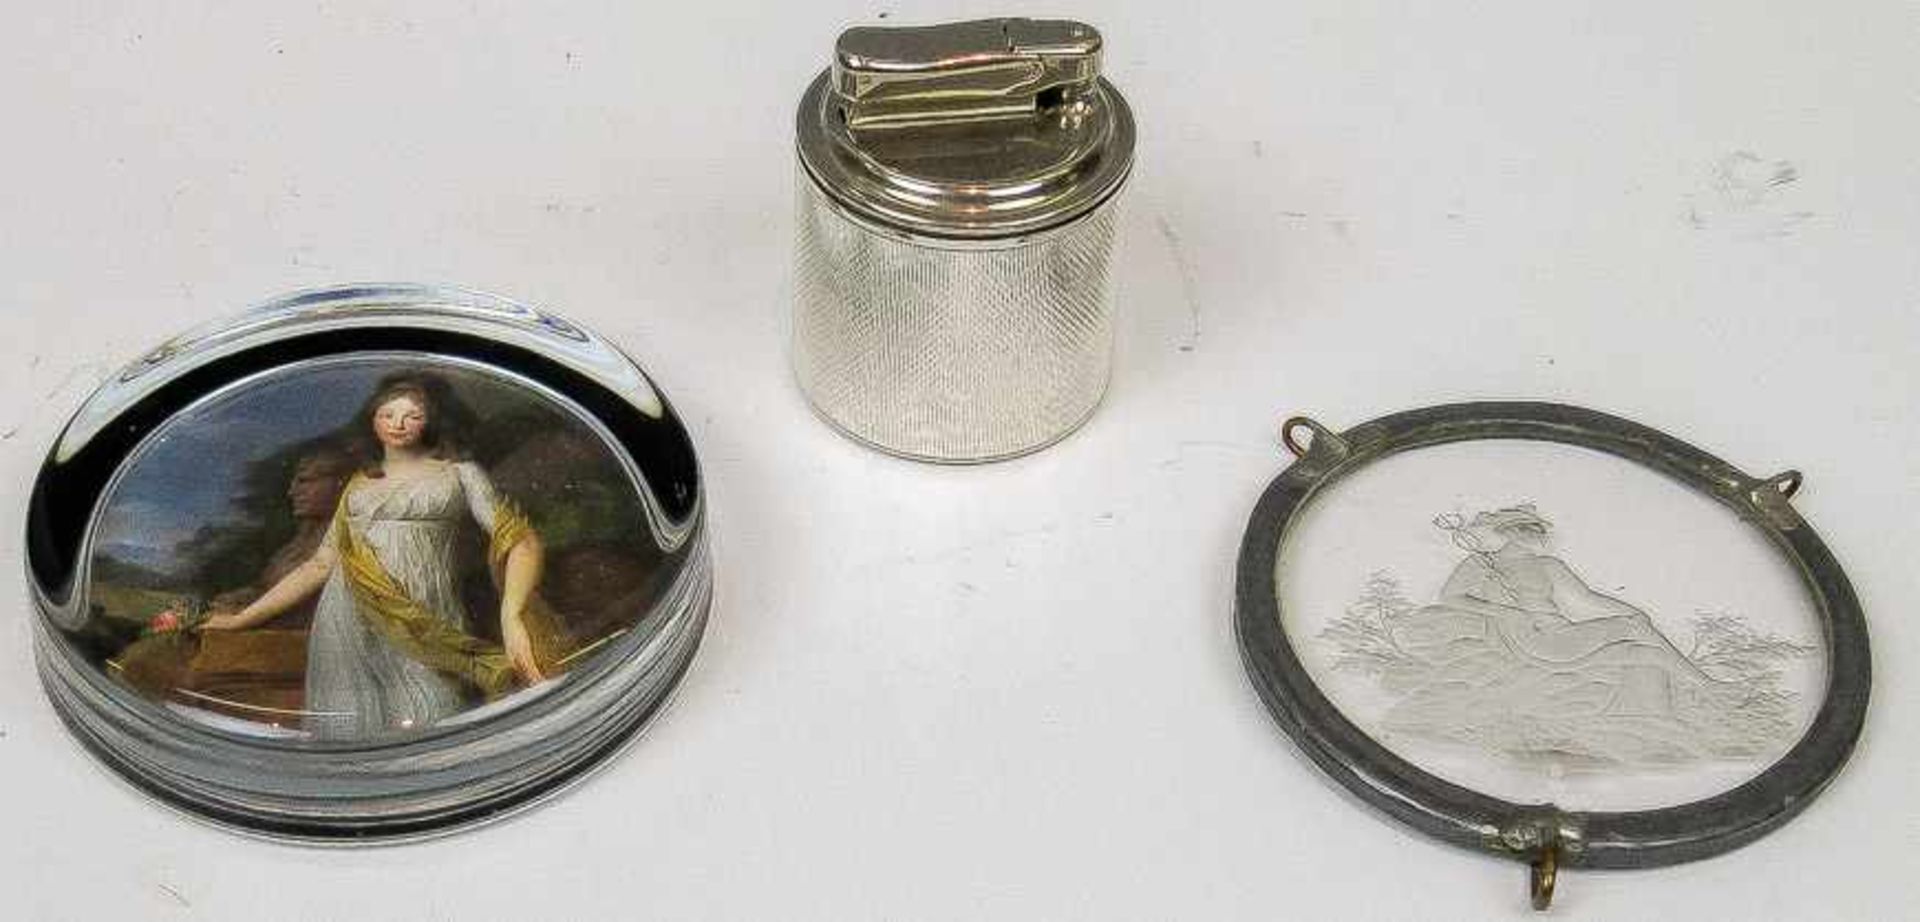 Gas-Tischfeuerzeug Mit guillochierter Silberummantelung. H. 6 cm. Beigegeben: Kl. runder